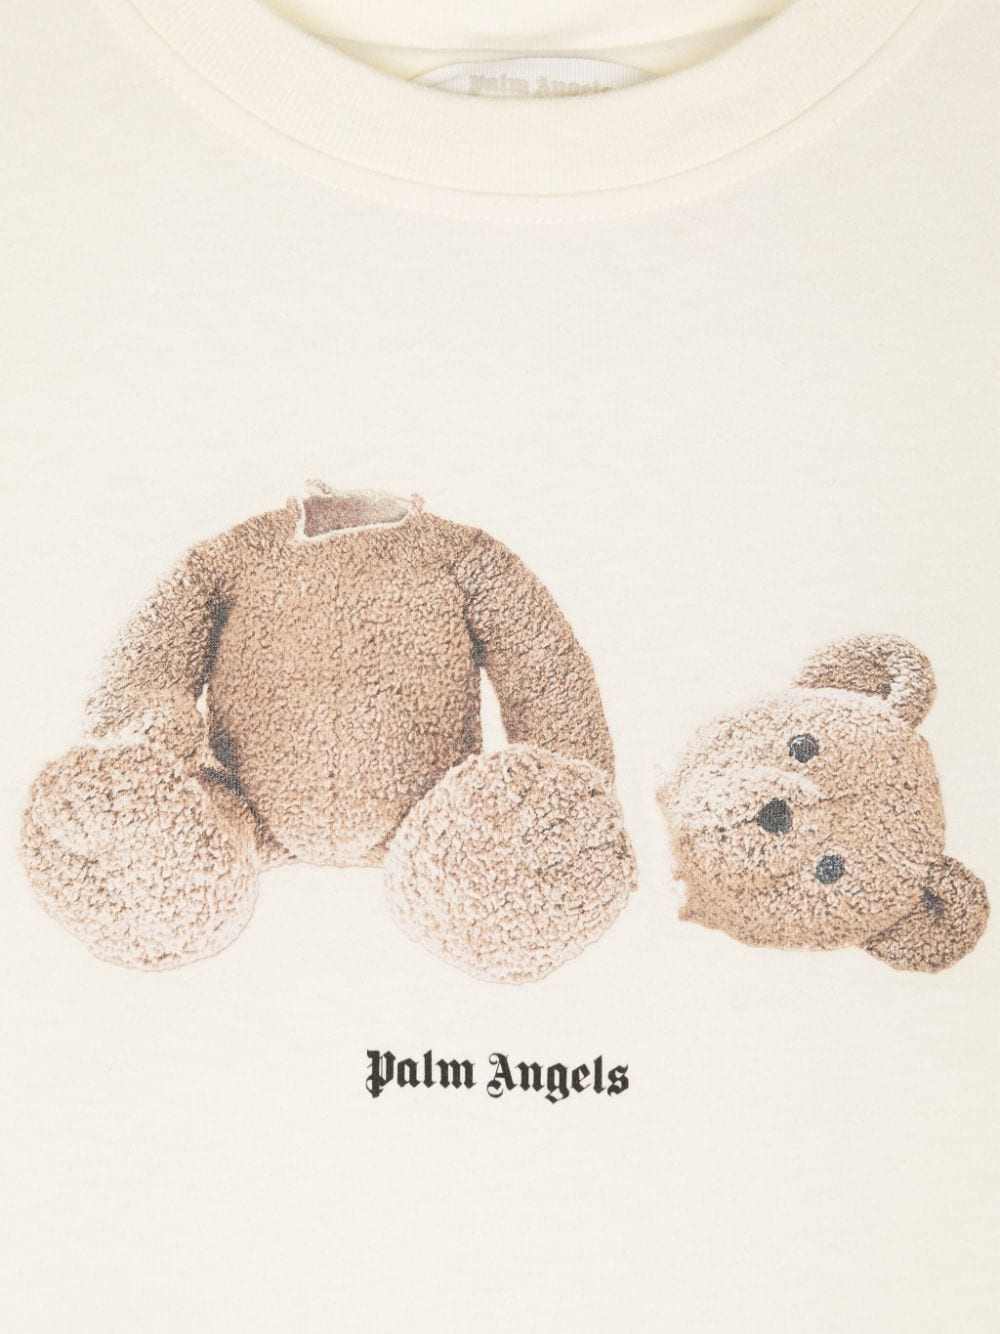 Maglietta in cotone Broken Bear - Rubino Kids